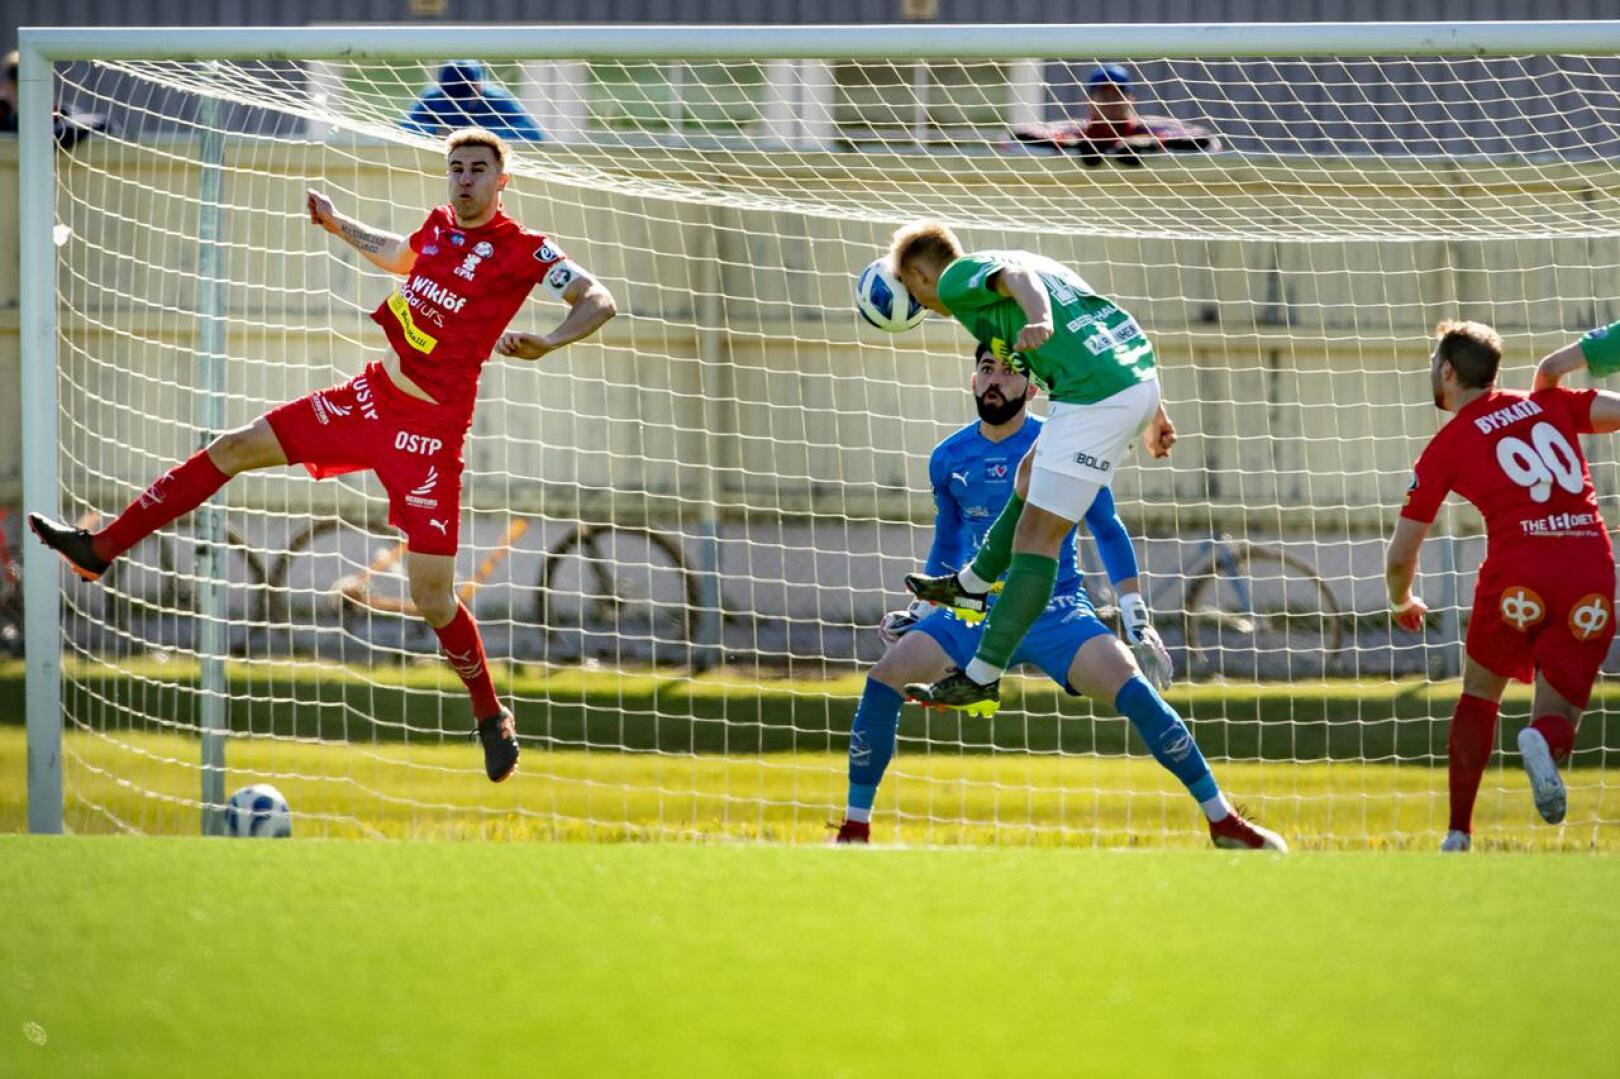 KPV:n Eetu Rissanen puski kohti Jaron maalia joukkueiden toukokuisessa kohtaamisessa, mutta Thomas Olsen torjui ja Jaro vei ottelun 2-0. Heinäkuun puolivälissä joukkueet löytyvät sarjataulukon eri päistä. 